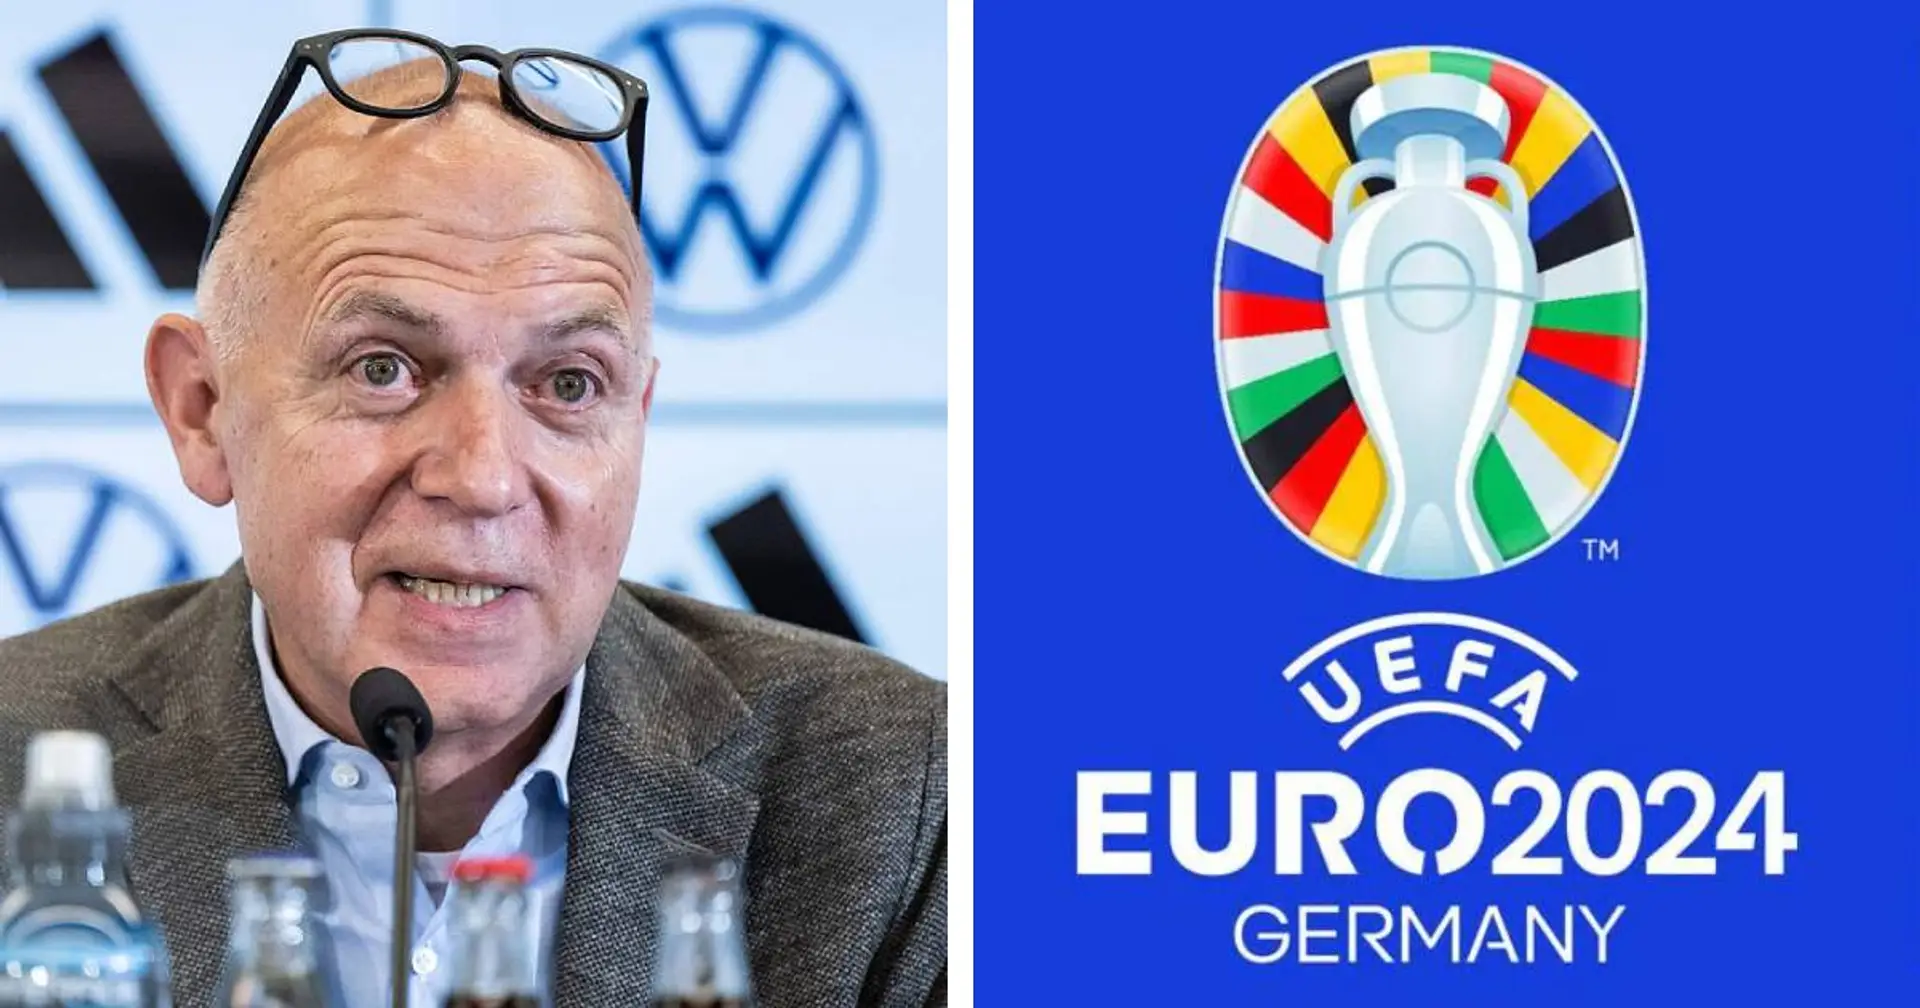 DFB-Präsident Neuendorf gibt EM-Finale 2024 als Ziel für die deutsche Nationalelf aus